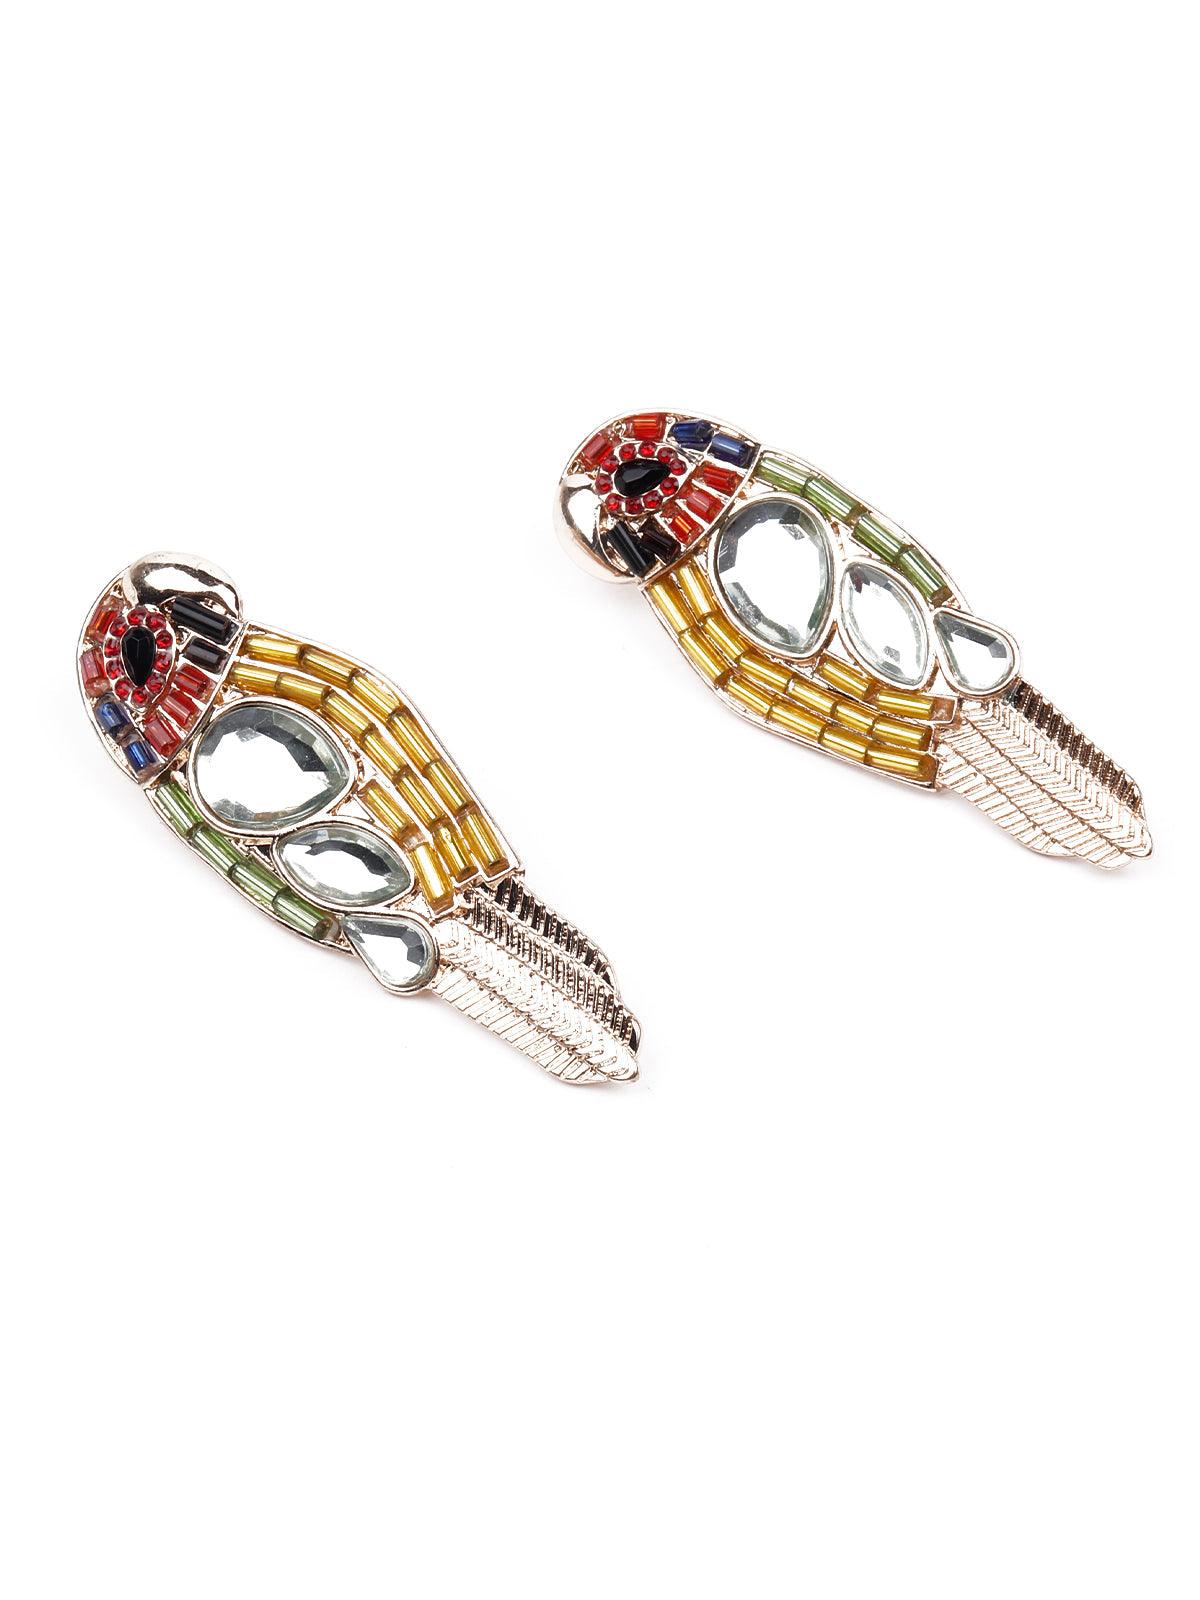 Parrot shaped beaded statement earrings - Odette